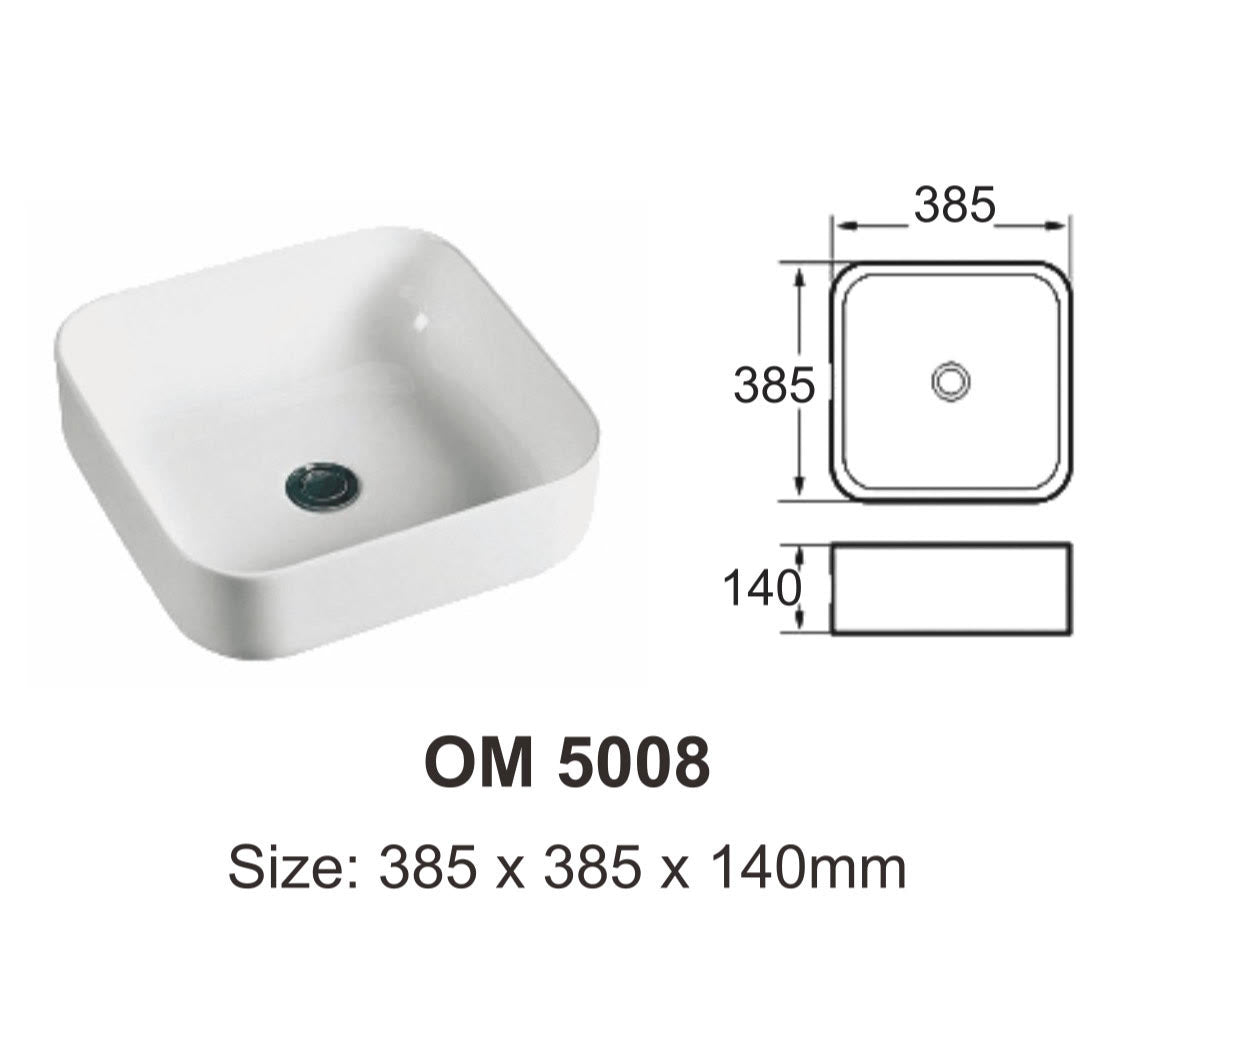 quality ceramic grade A basin OM5008